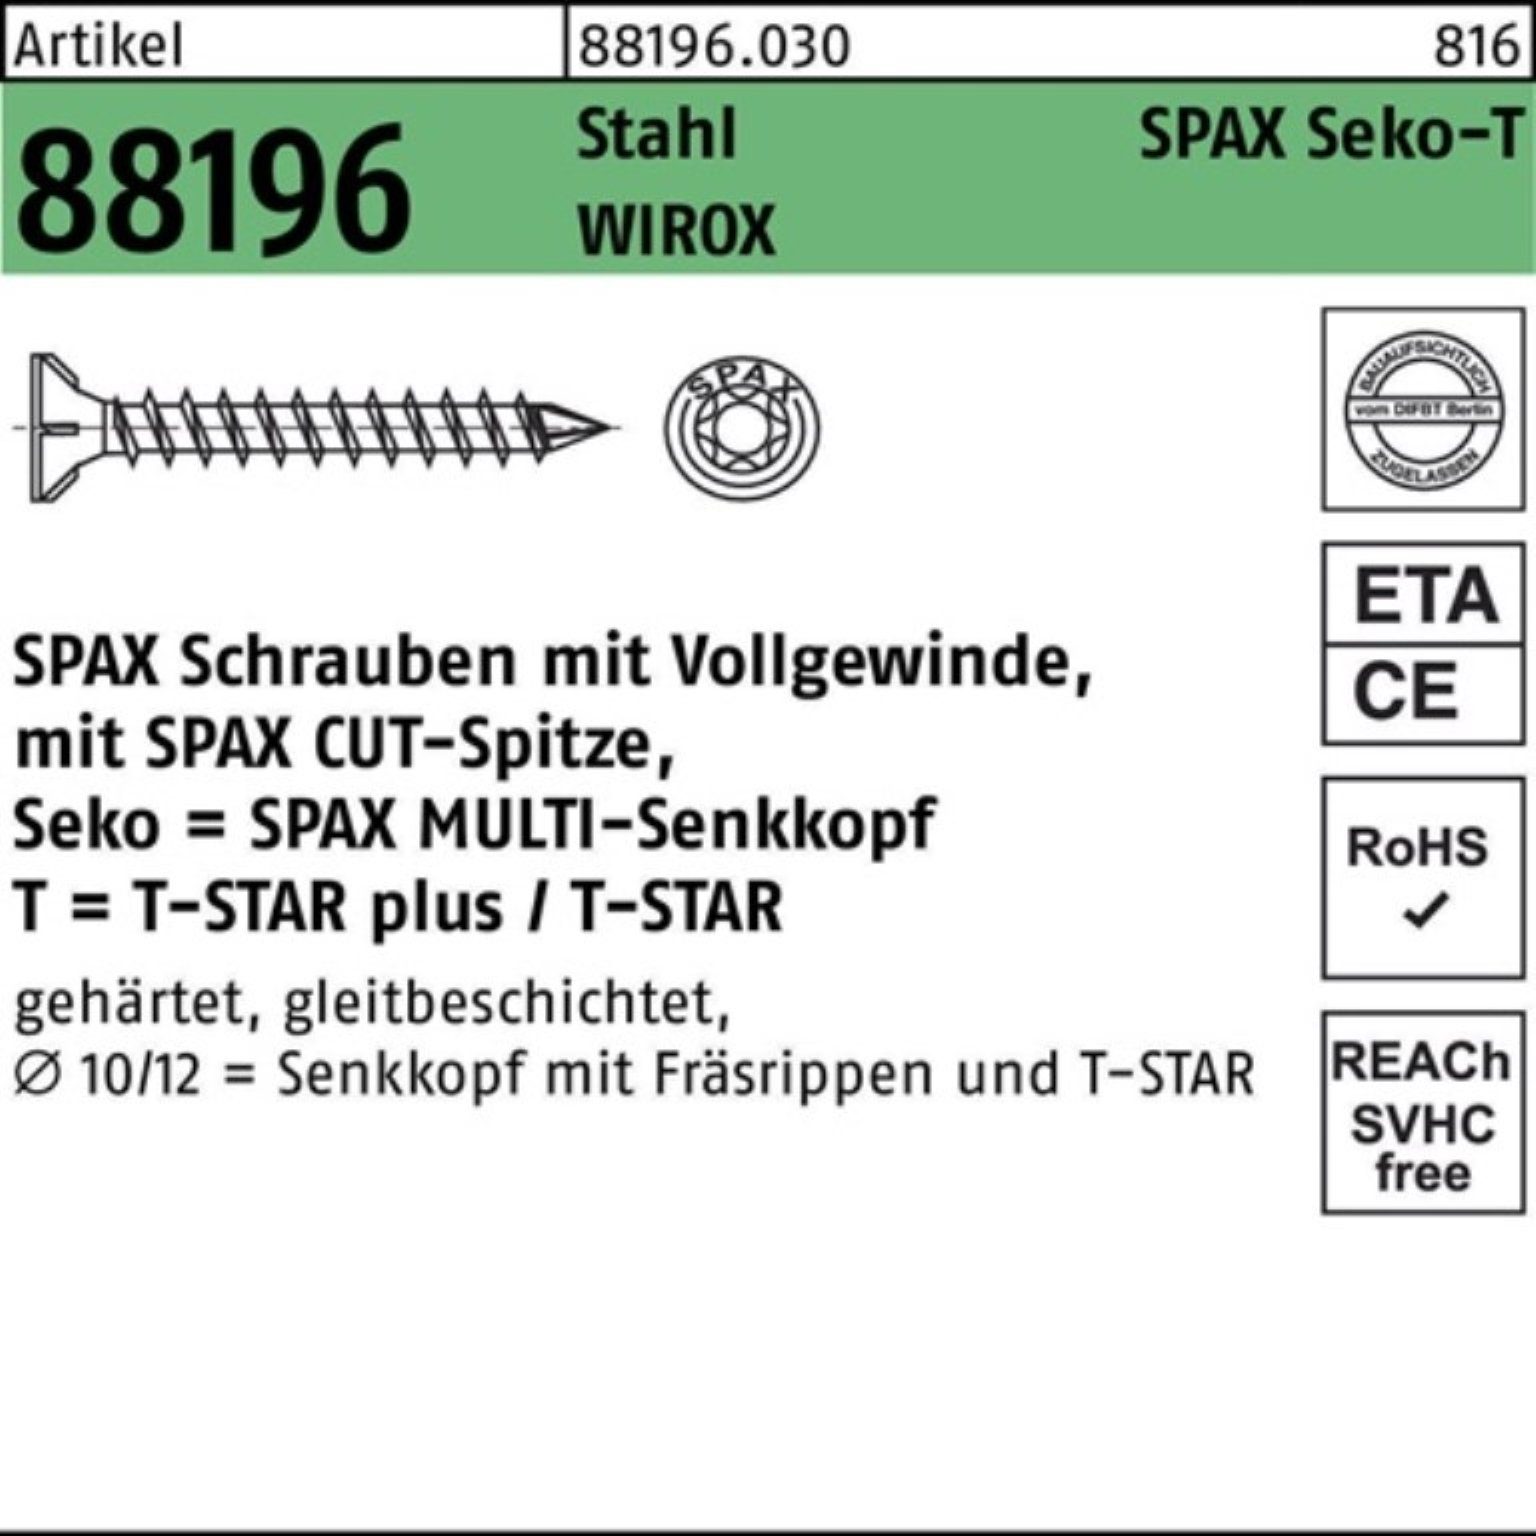 Schraube 88196 100er VG R 12x350-T50 Pack Schraube Spitze/T-STAR Sta galv. Seko SPAX